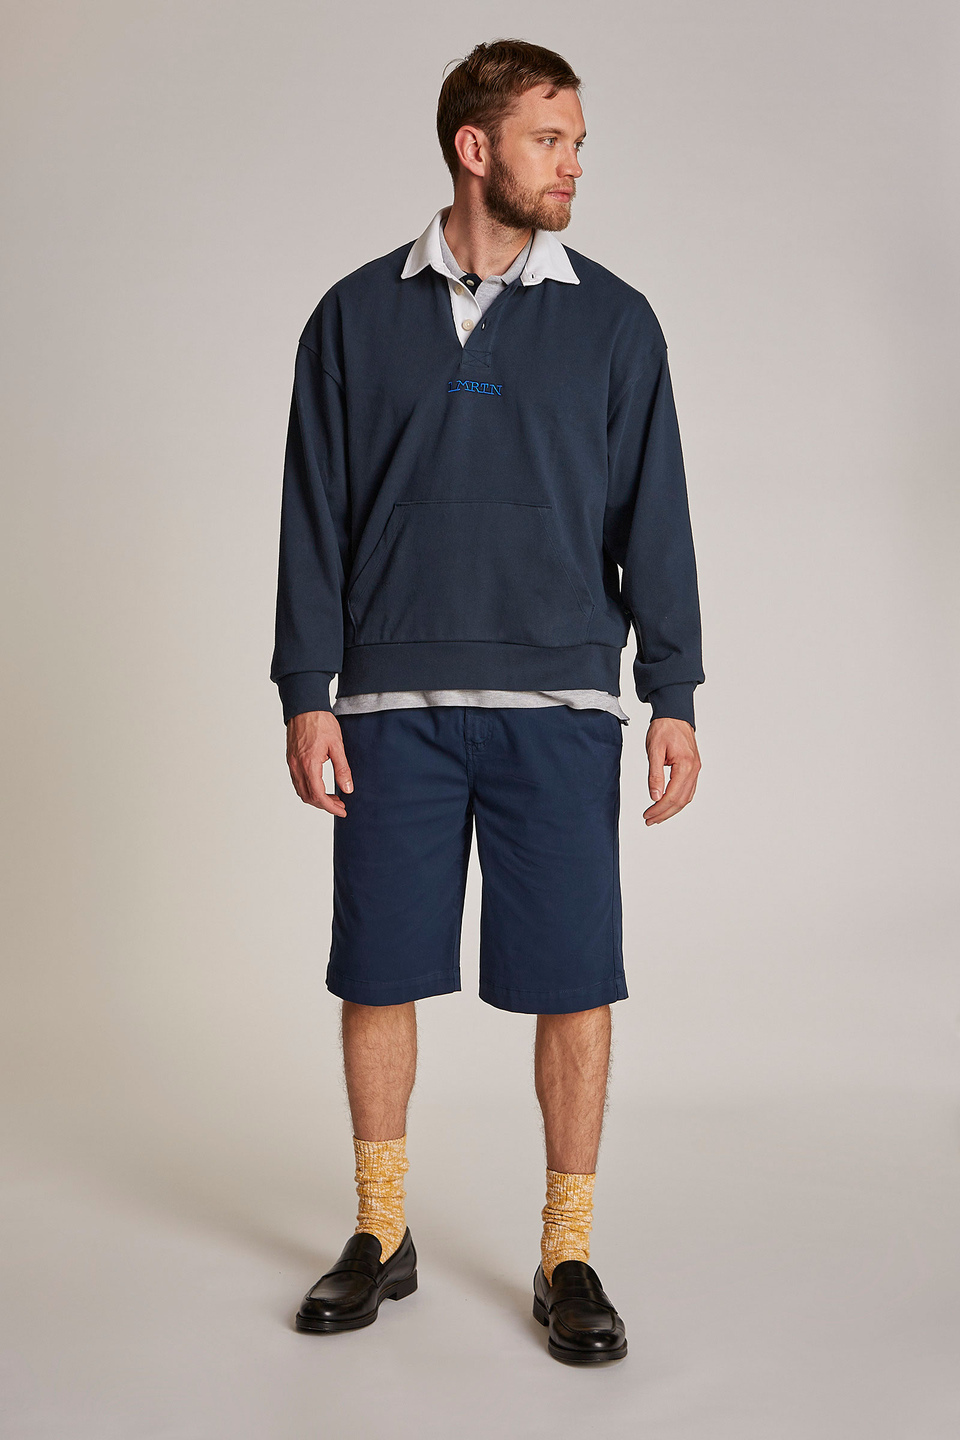 Herren-Sweatshirt aus 100 % Baumwolle mit einem Kragen in Kontrastoptik, oversized Modell - La Martina - Official Online Shop